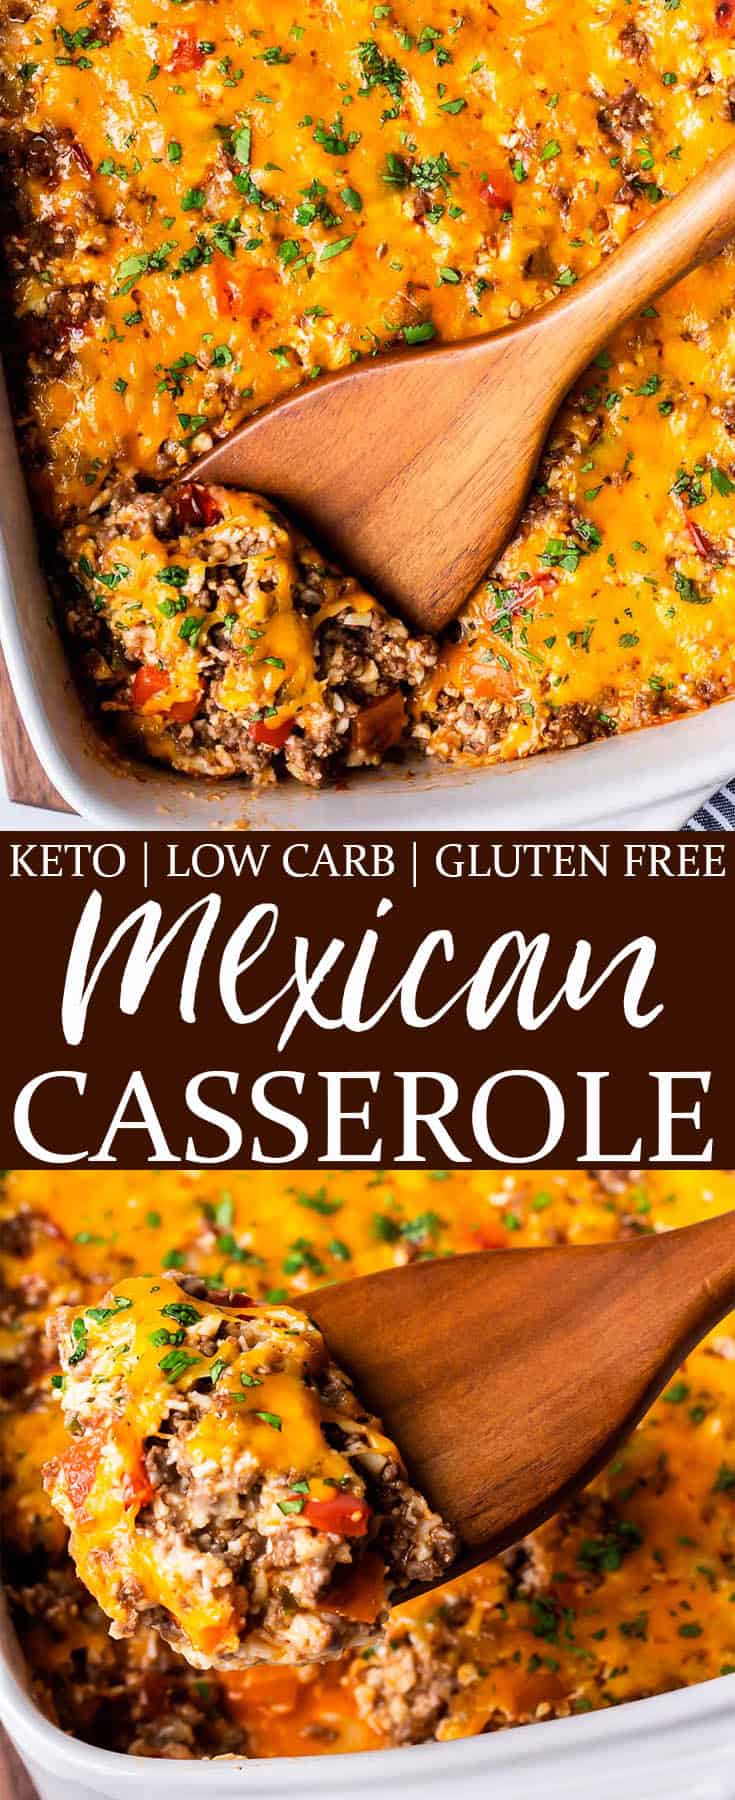 Keto Mexican Casserole - Delicious Little Bites